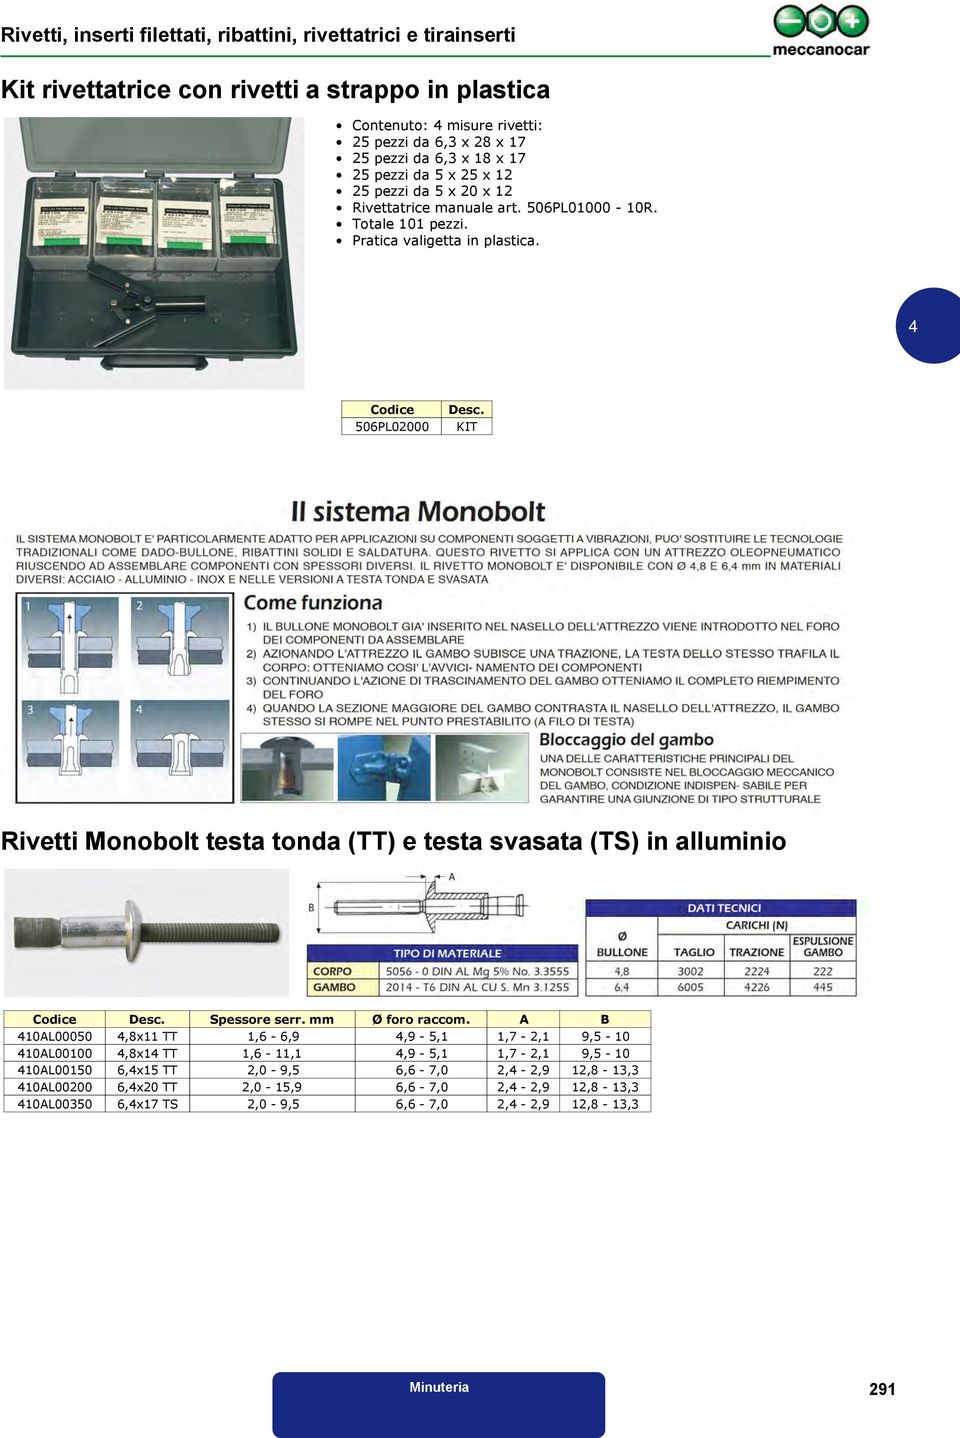 KIT Rivetti Monobolt testa tonda (TT) e testa svasata (TS) in alluminio Codice Desc. Spessore serr. Ø foro raccom.